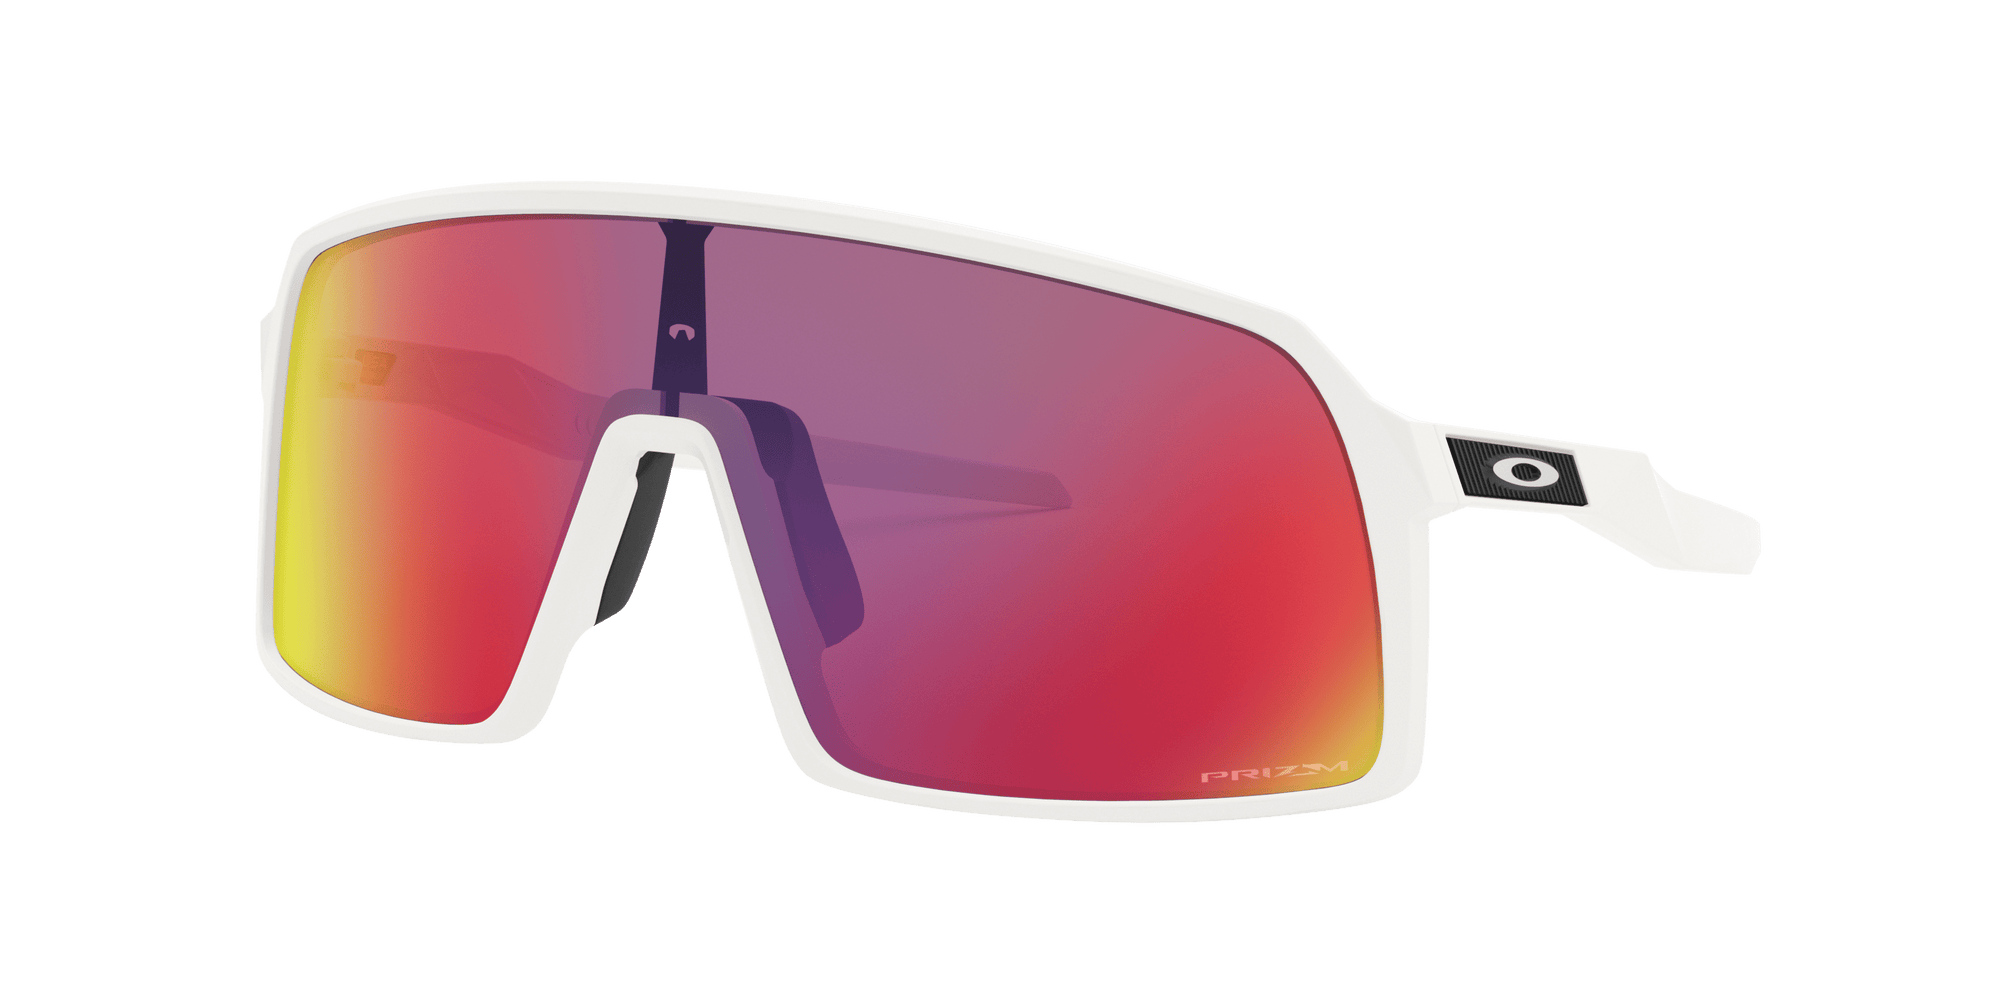 OAKLEY Sutro Matte White - Prizm Road Sunglasses Sunglasses Oakley 